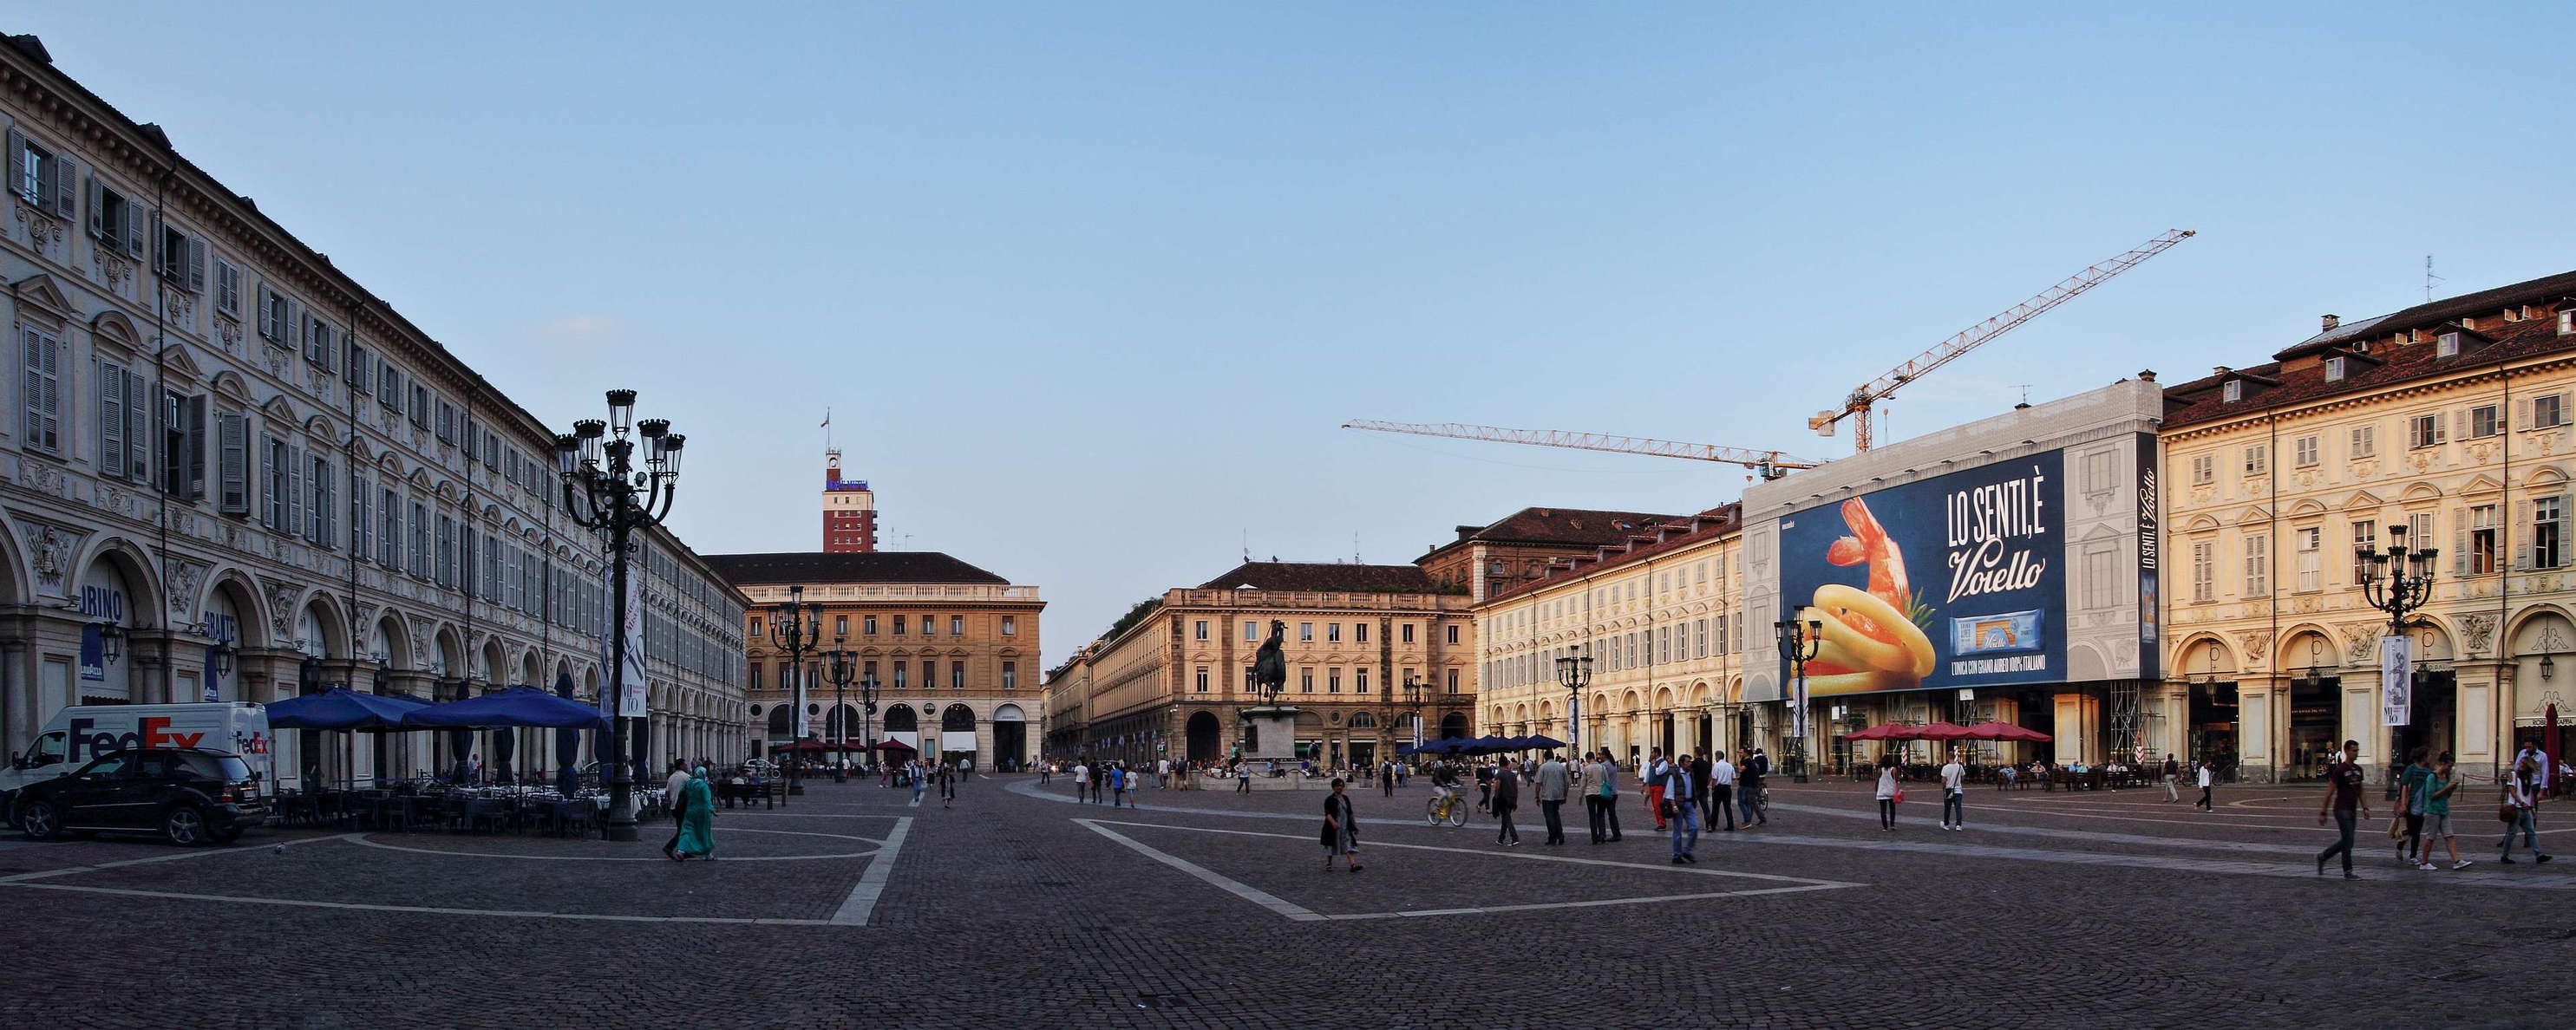 Torino | Piazza San Carlo